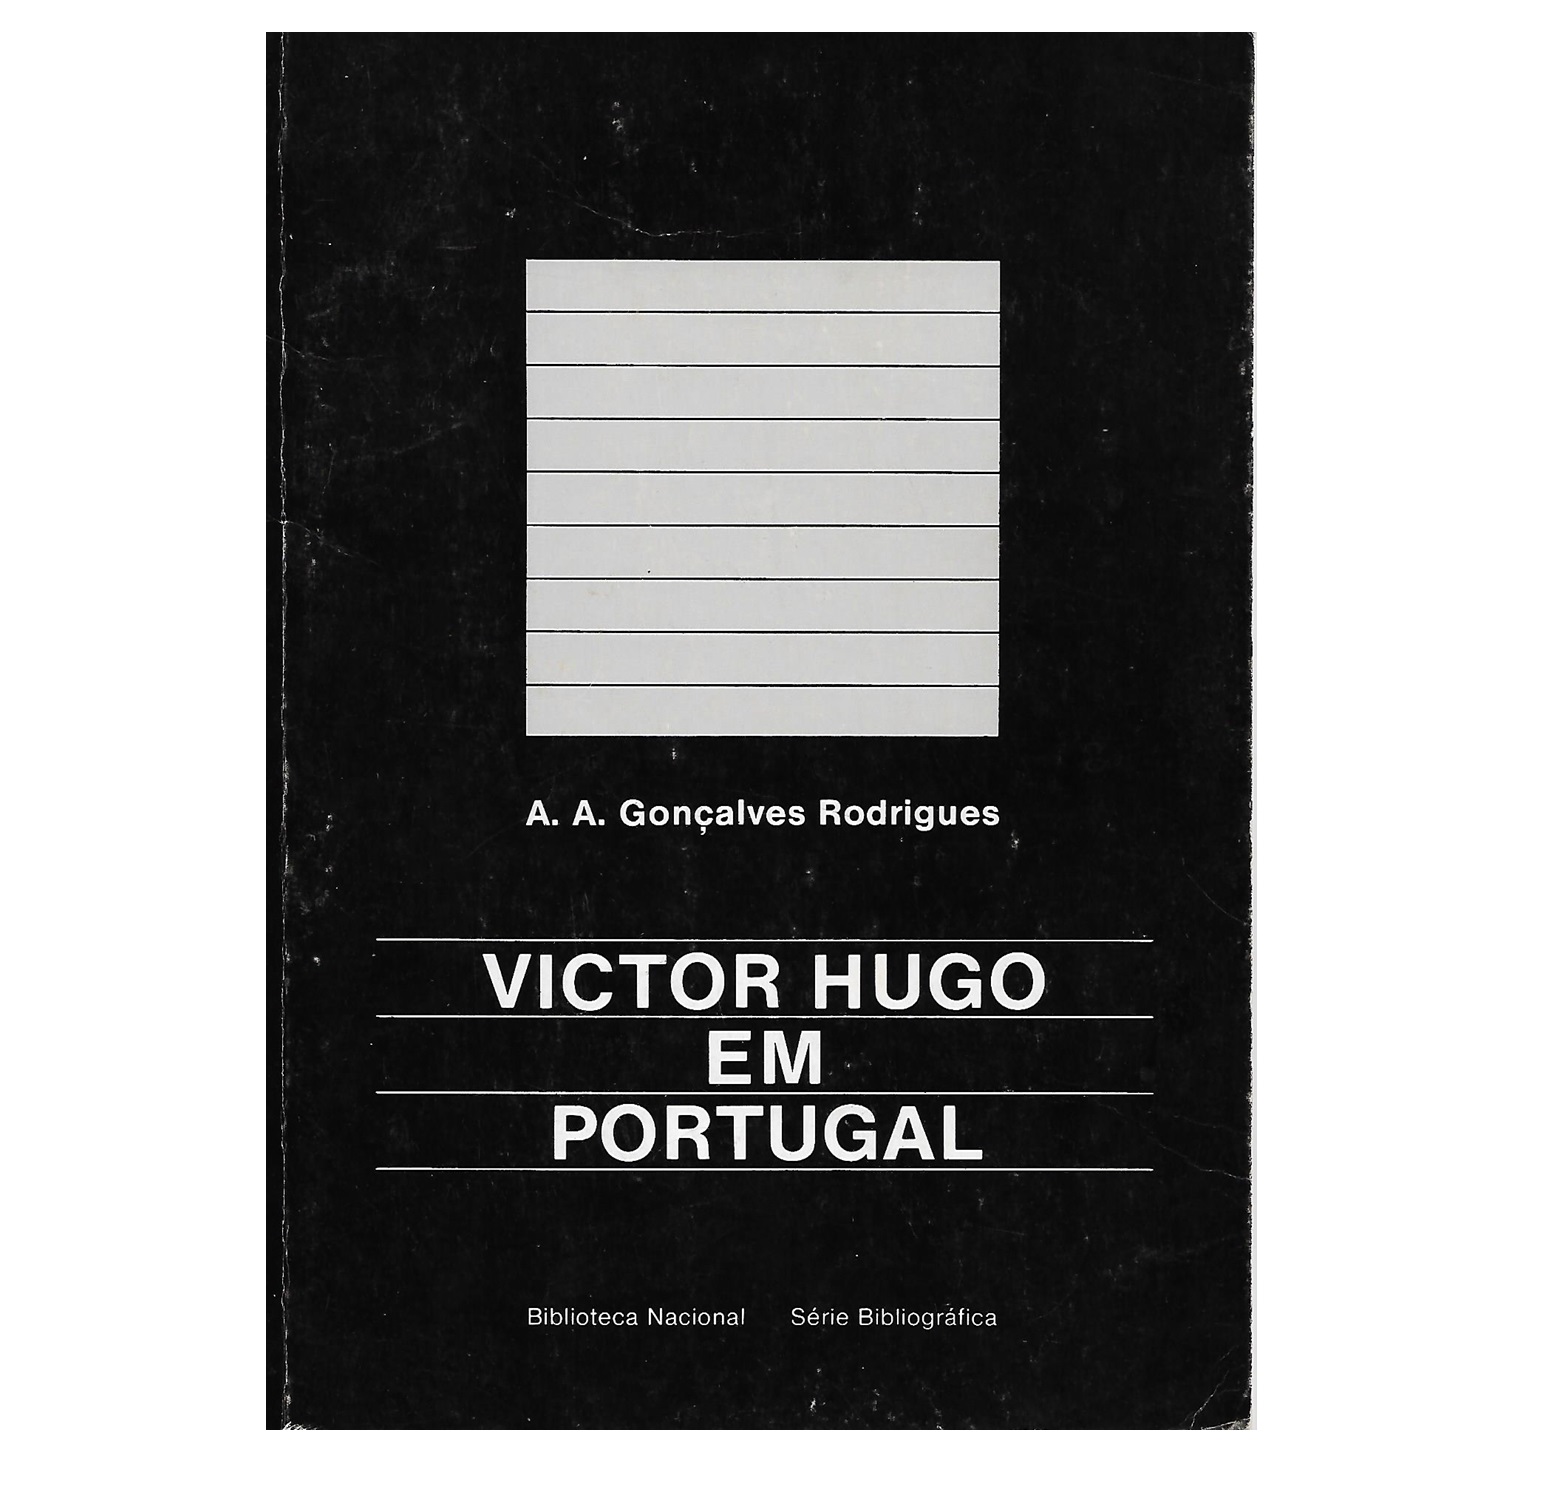 VICTOR HUGO EM PORTUGAL